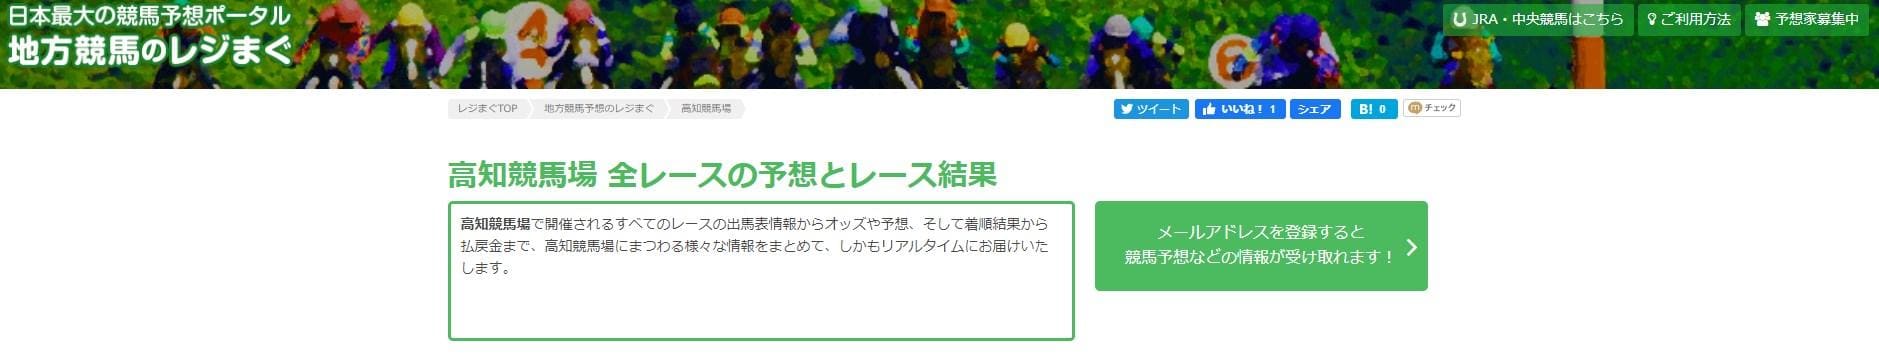 日本最大の競馬予想ポータル「地方競馬のレジまぐ」